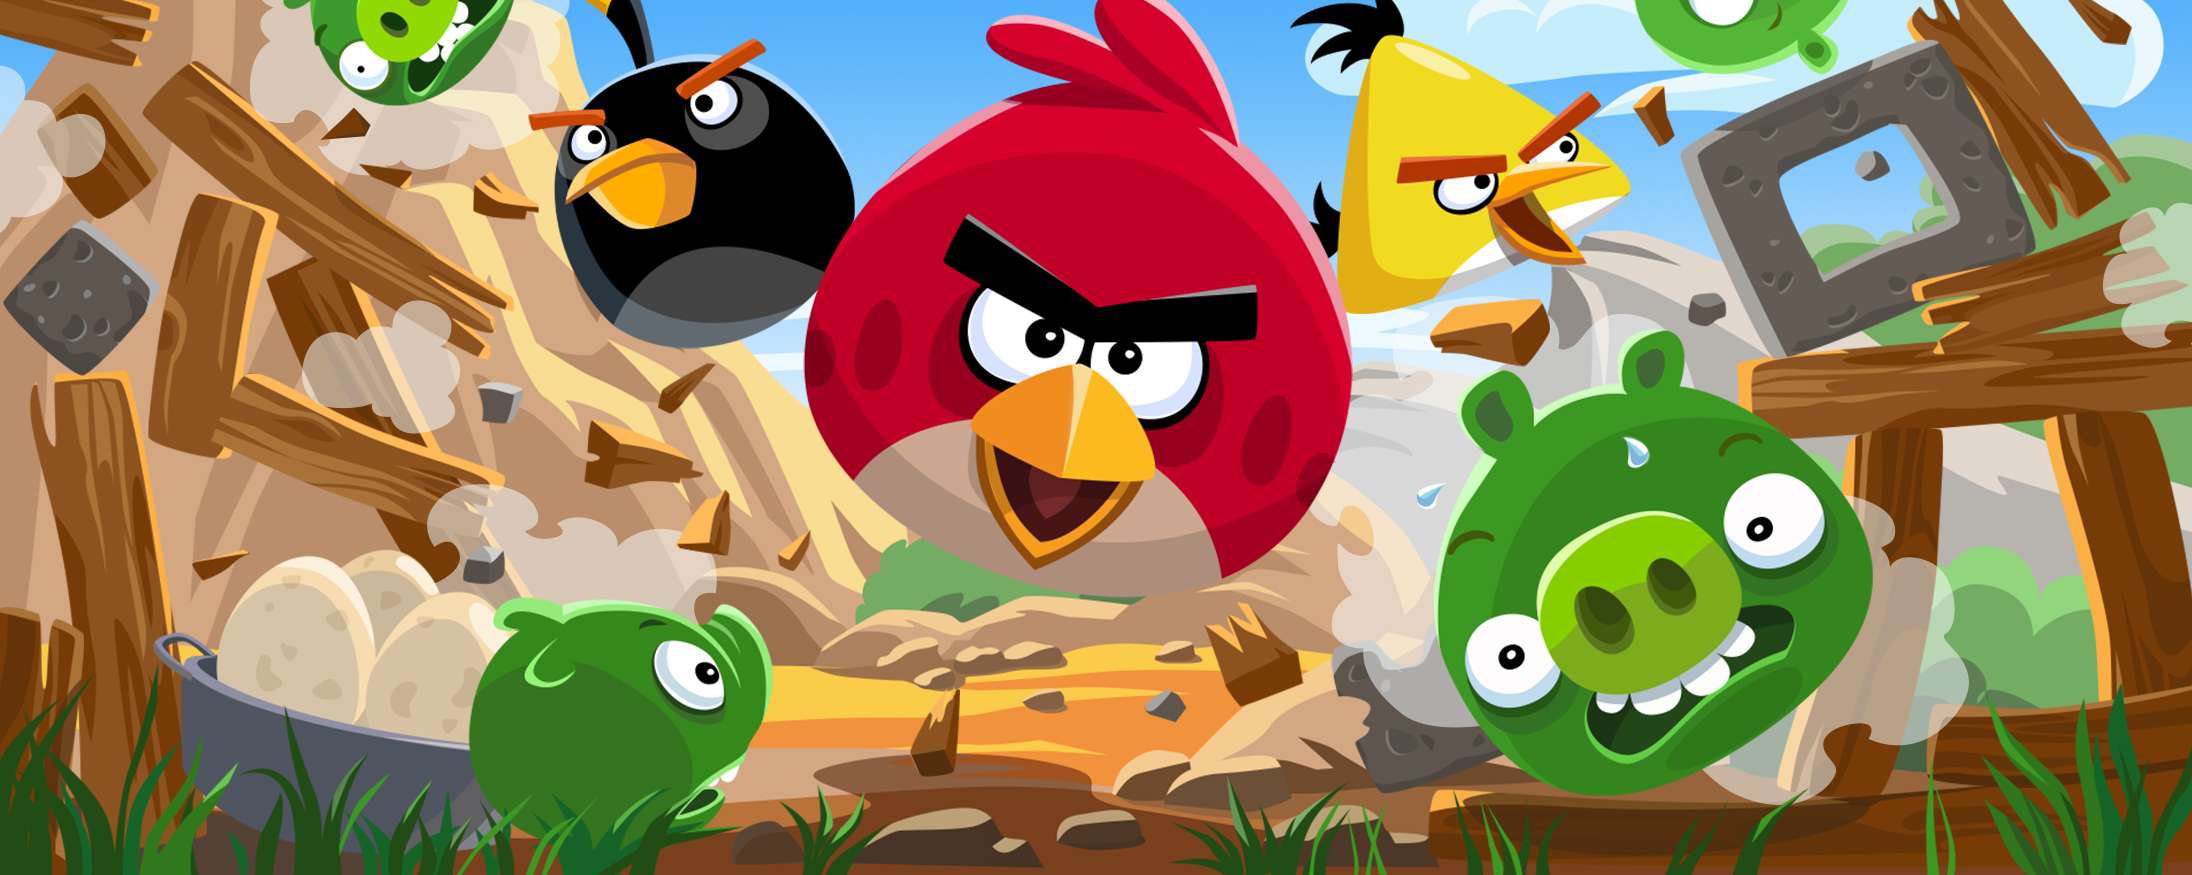 Mobilklassikeren ‘Angry Birds’ er stadig så populær, at spillet nu fjernes fra digitale butikker